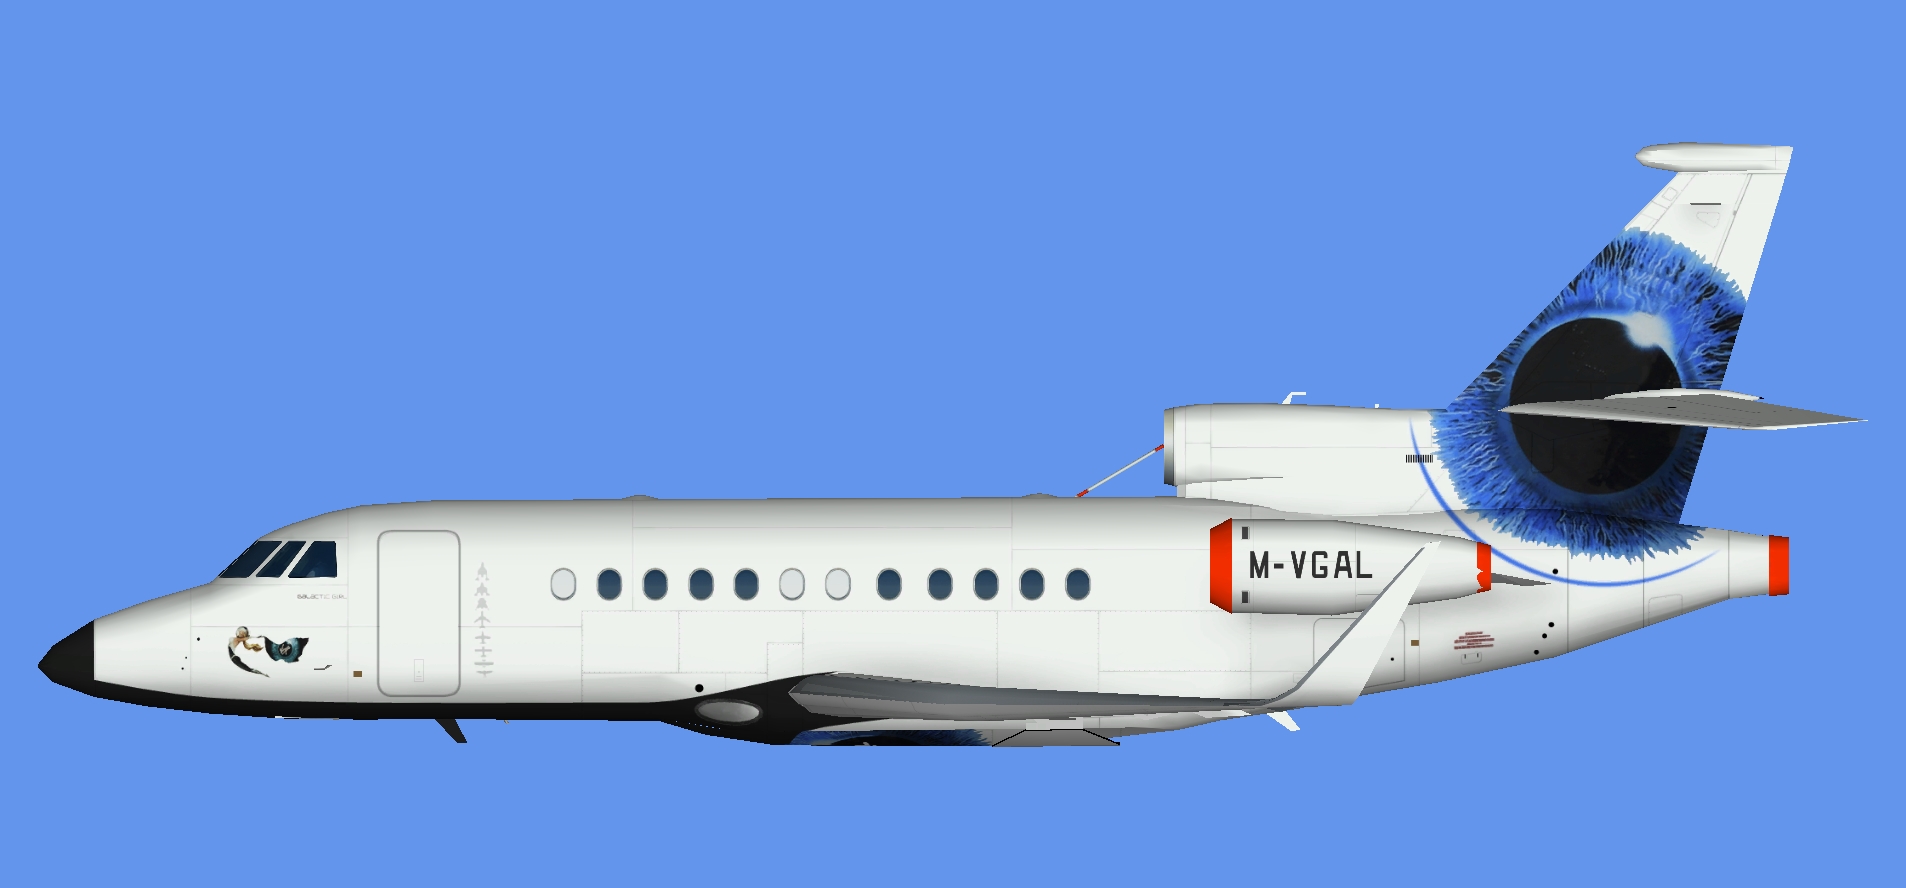 Dassault Falcon 900 M-VGAL